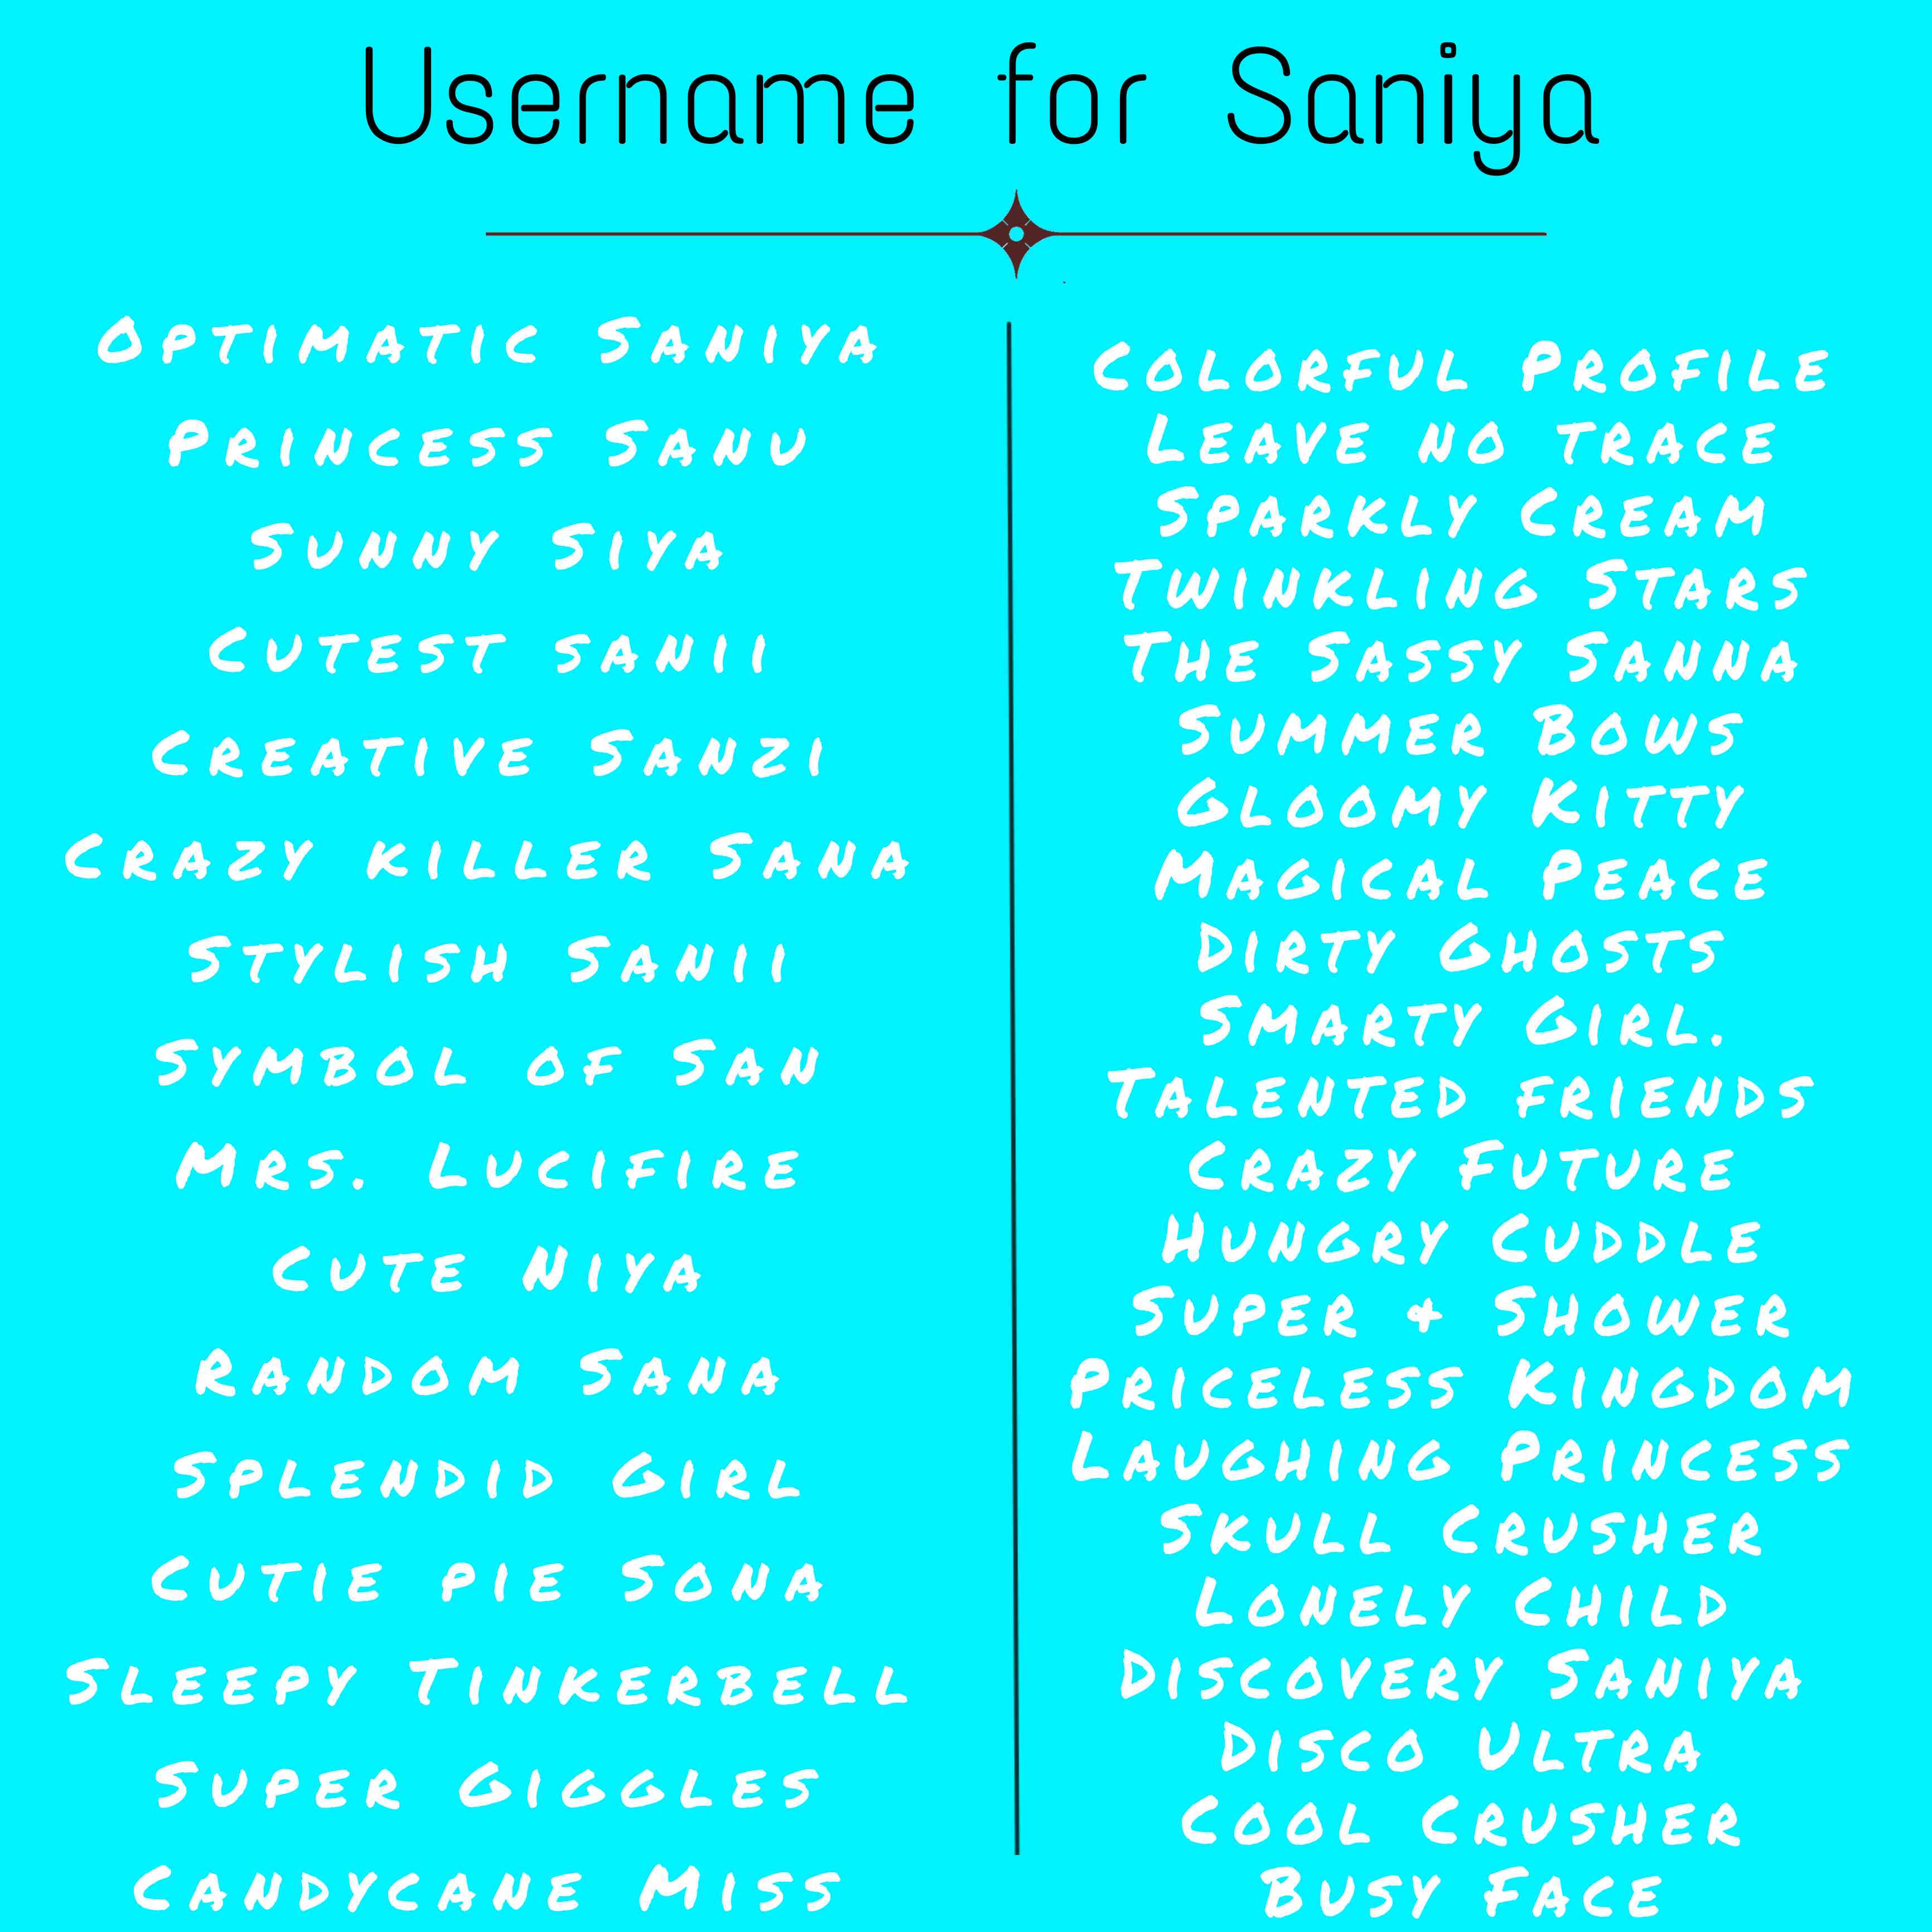 Username for Saniya